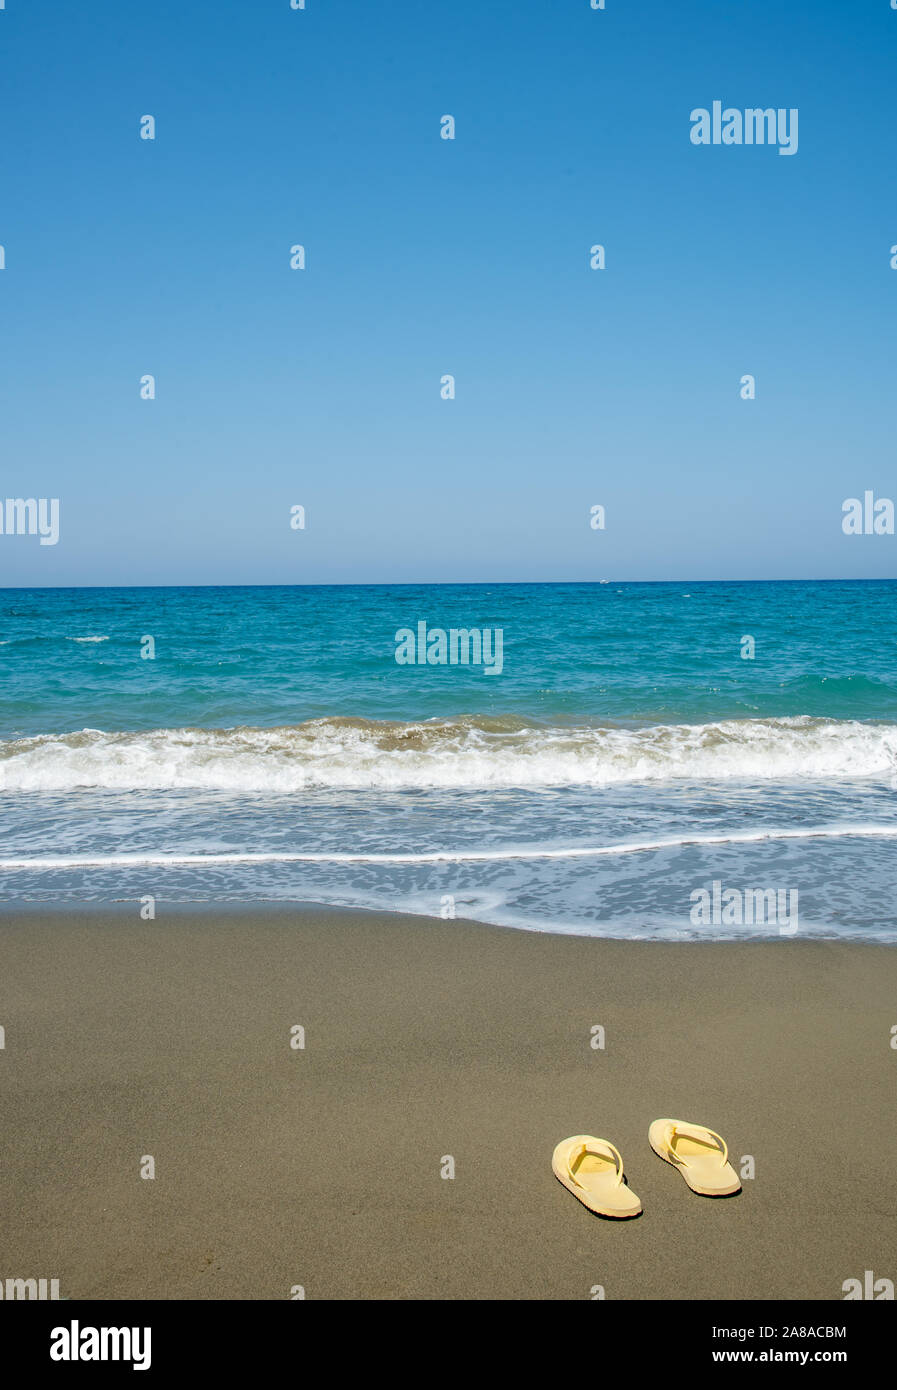 Yellow sandals , flip flops, on a golden sandy beach welcoming summer ...